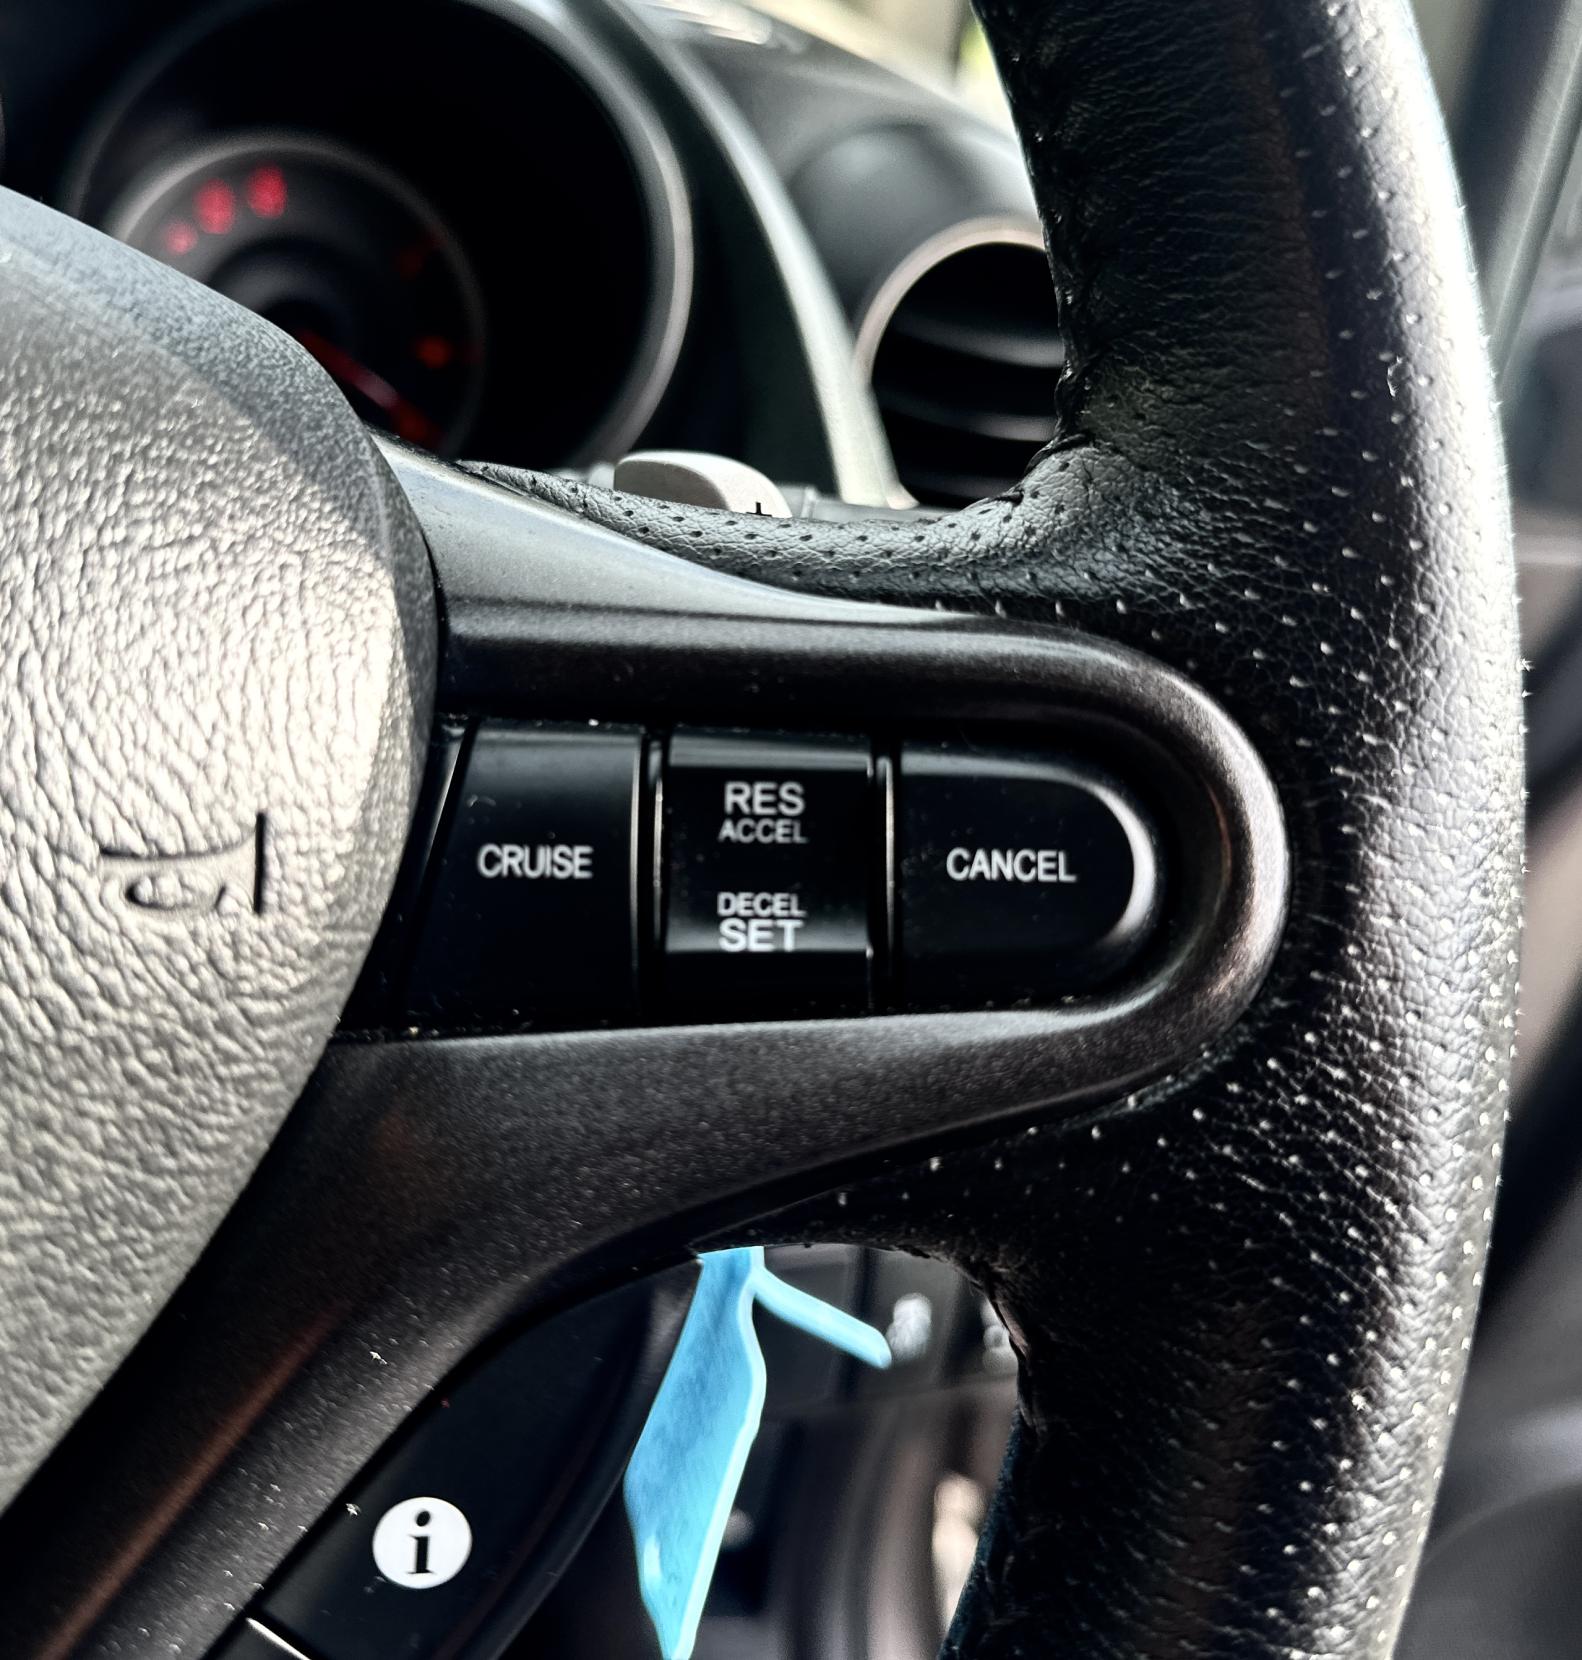 Honda Jazz 1.4 i-VTEC EX Hatchback 5dr Petrol CVT Euro 5 (99 ps)